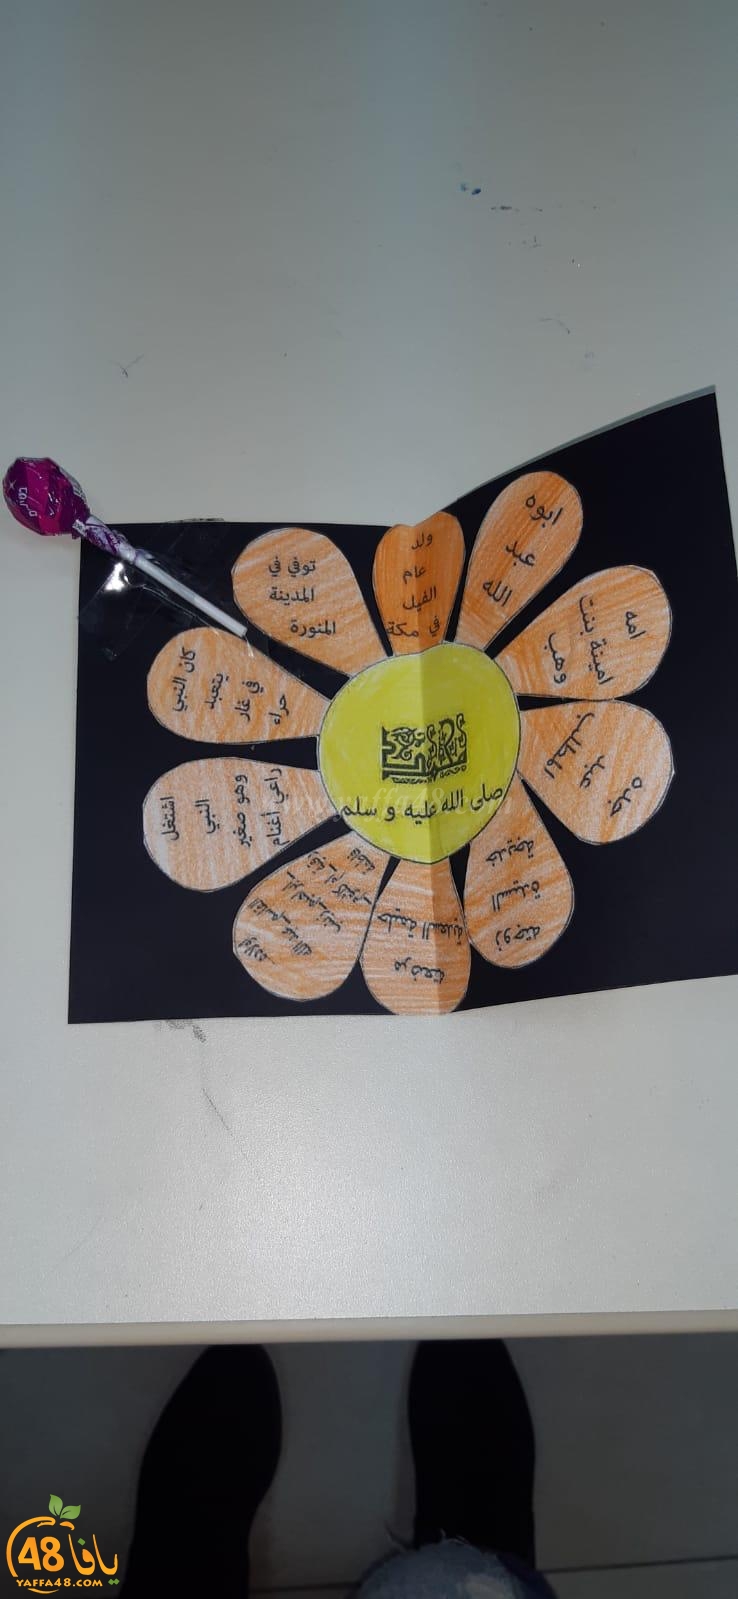 يافا: مدرسة أجيال الثانوية تُنظم احتفالاً في ذكرى المولد النبوي الشريف 